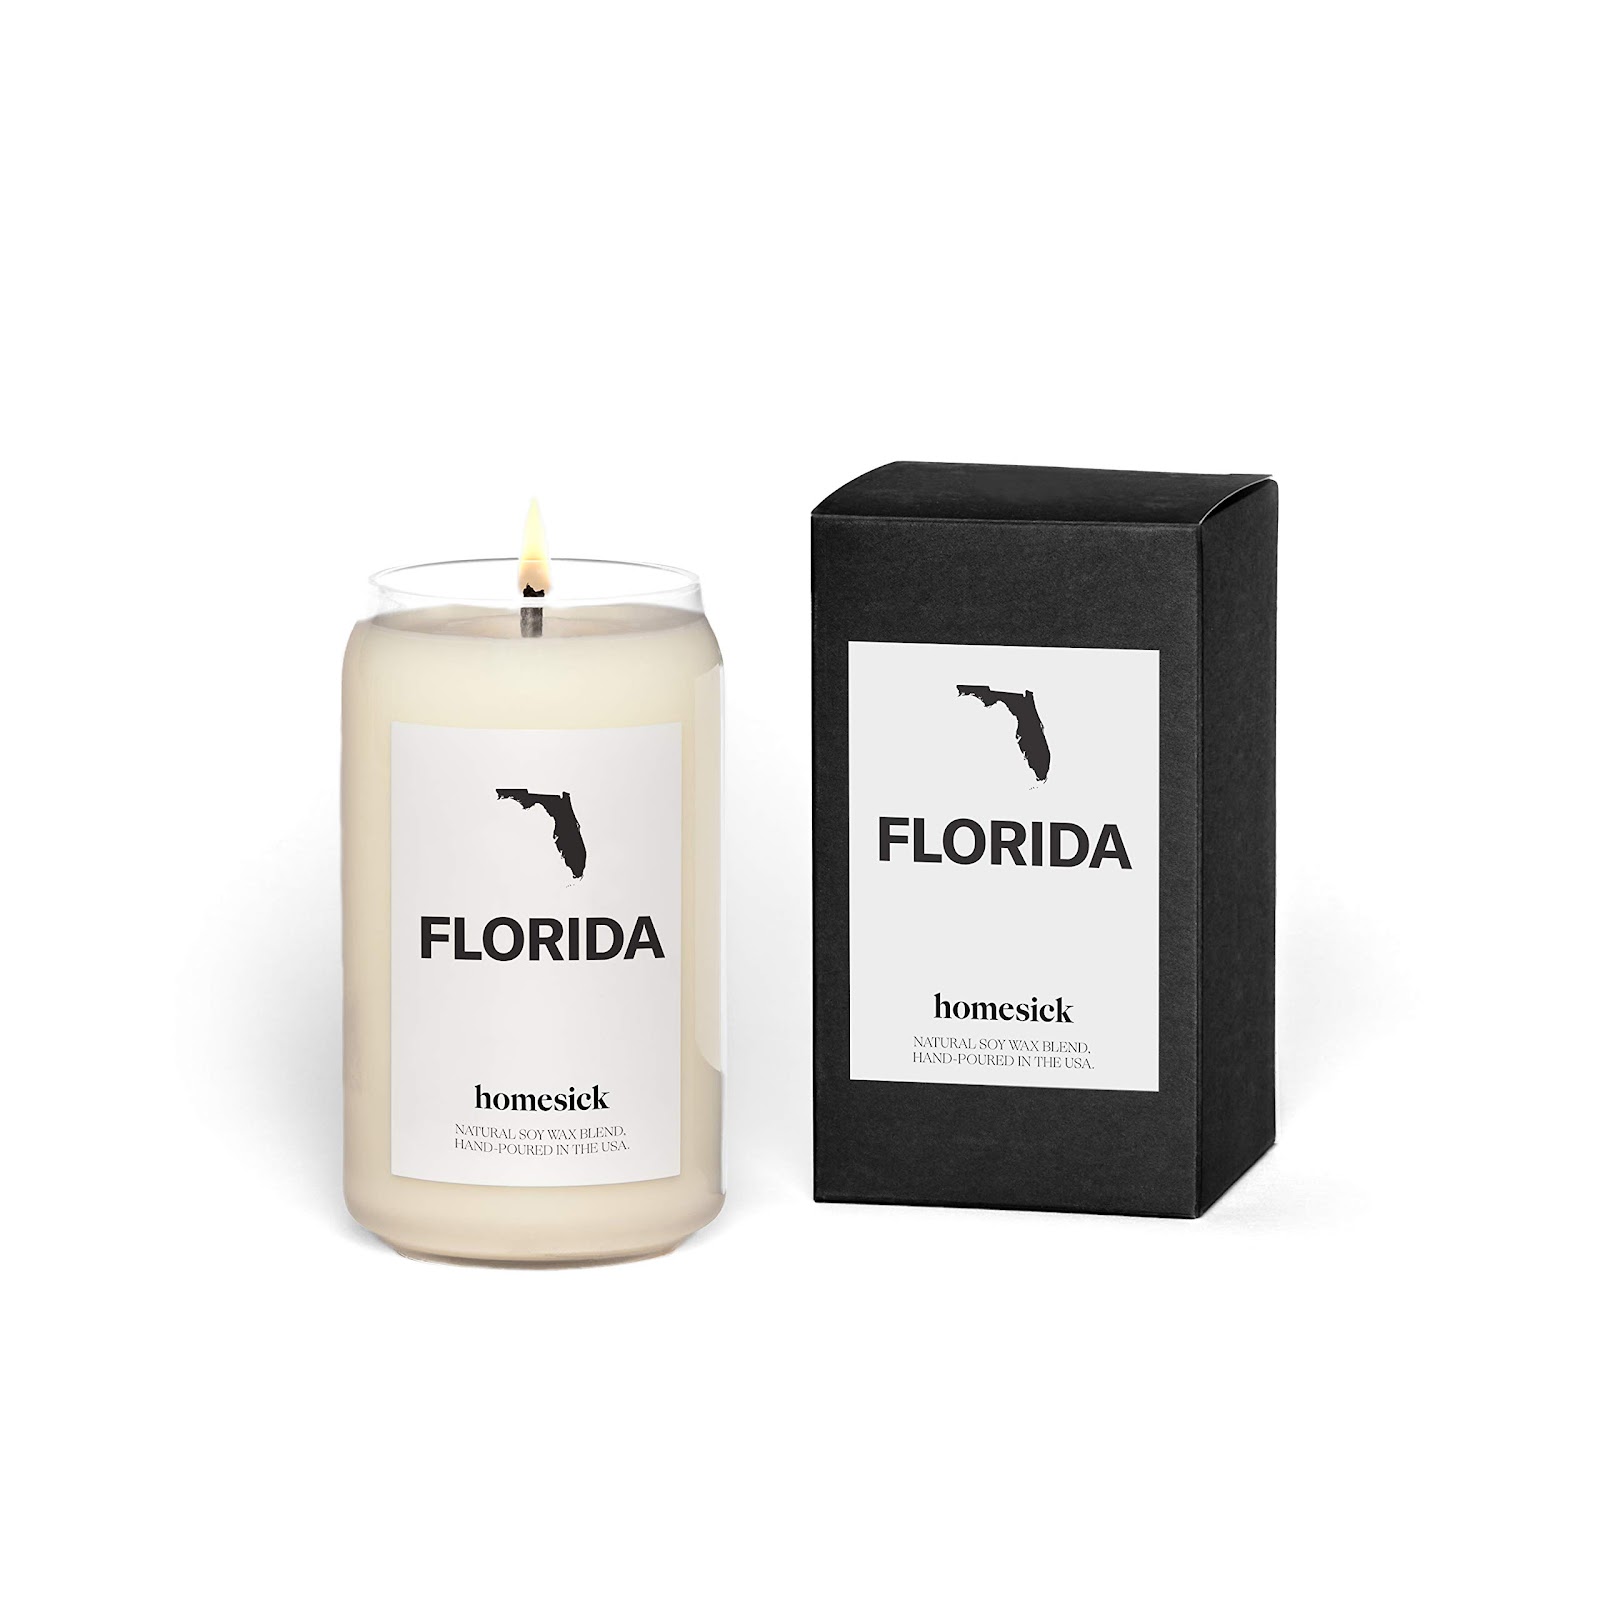 Homesick Premium Scented Candle, Florida